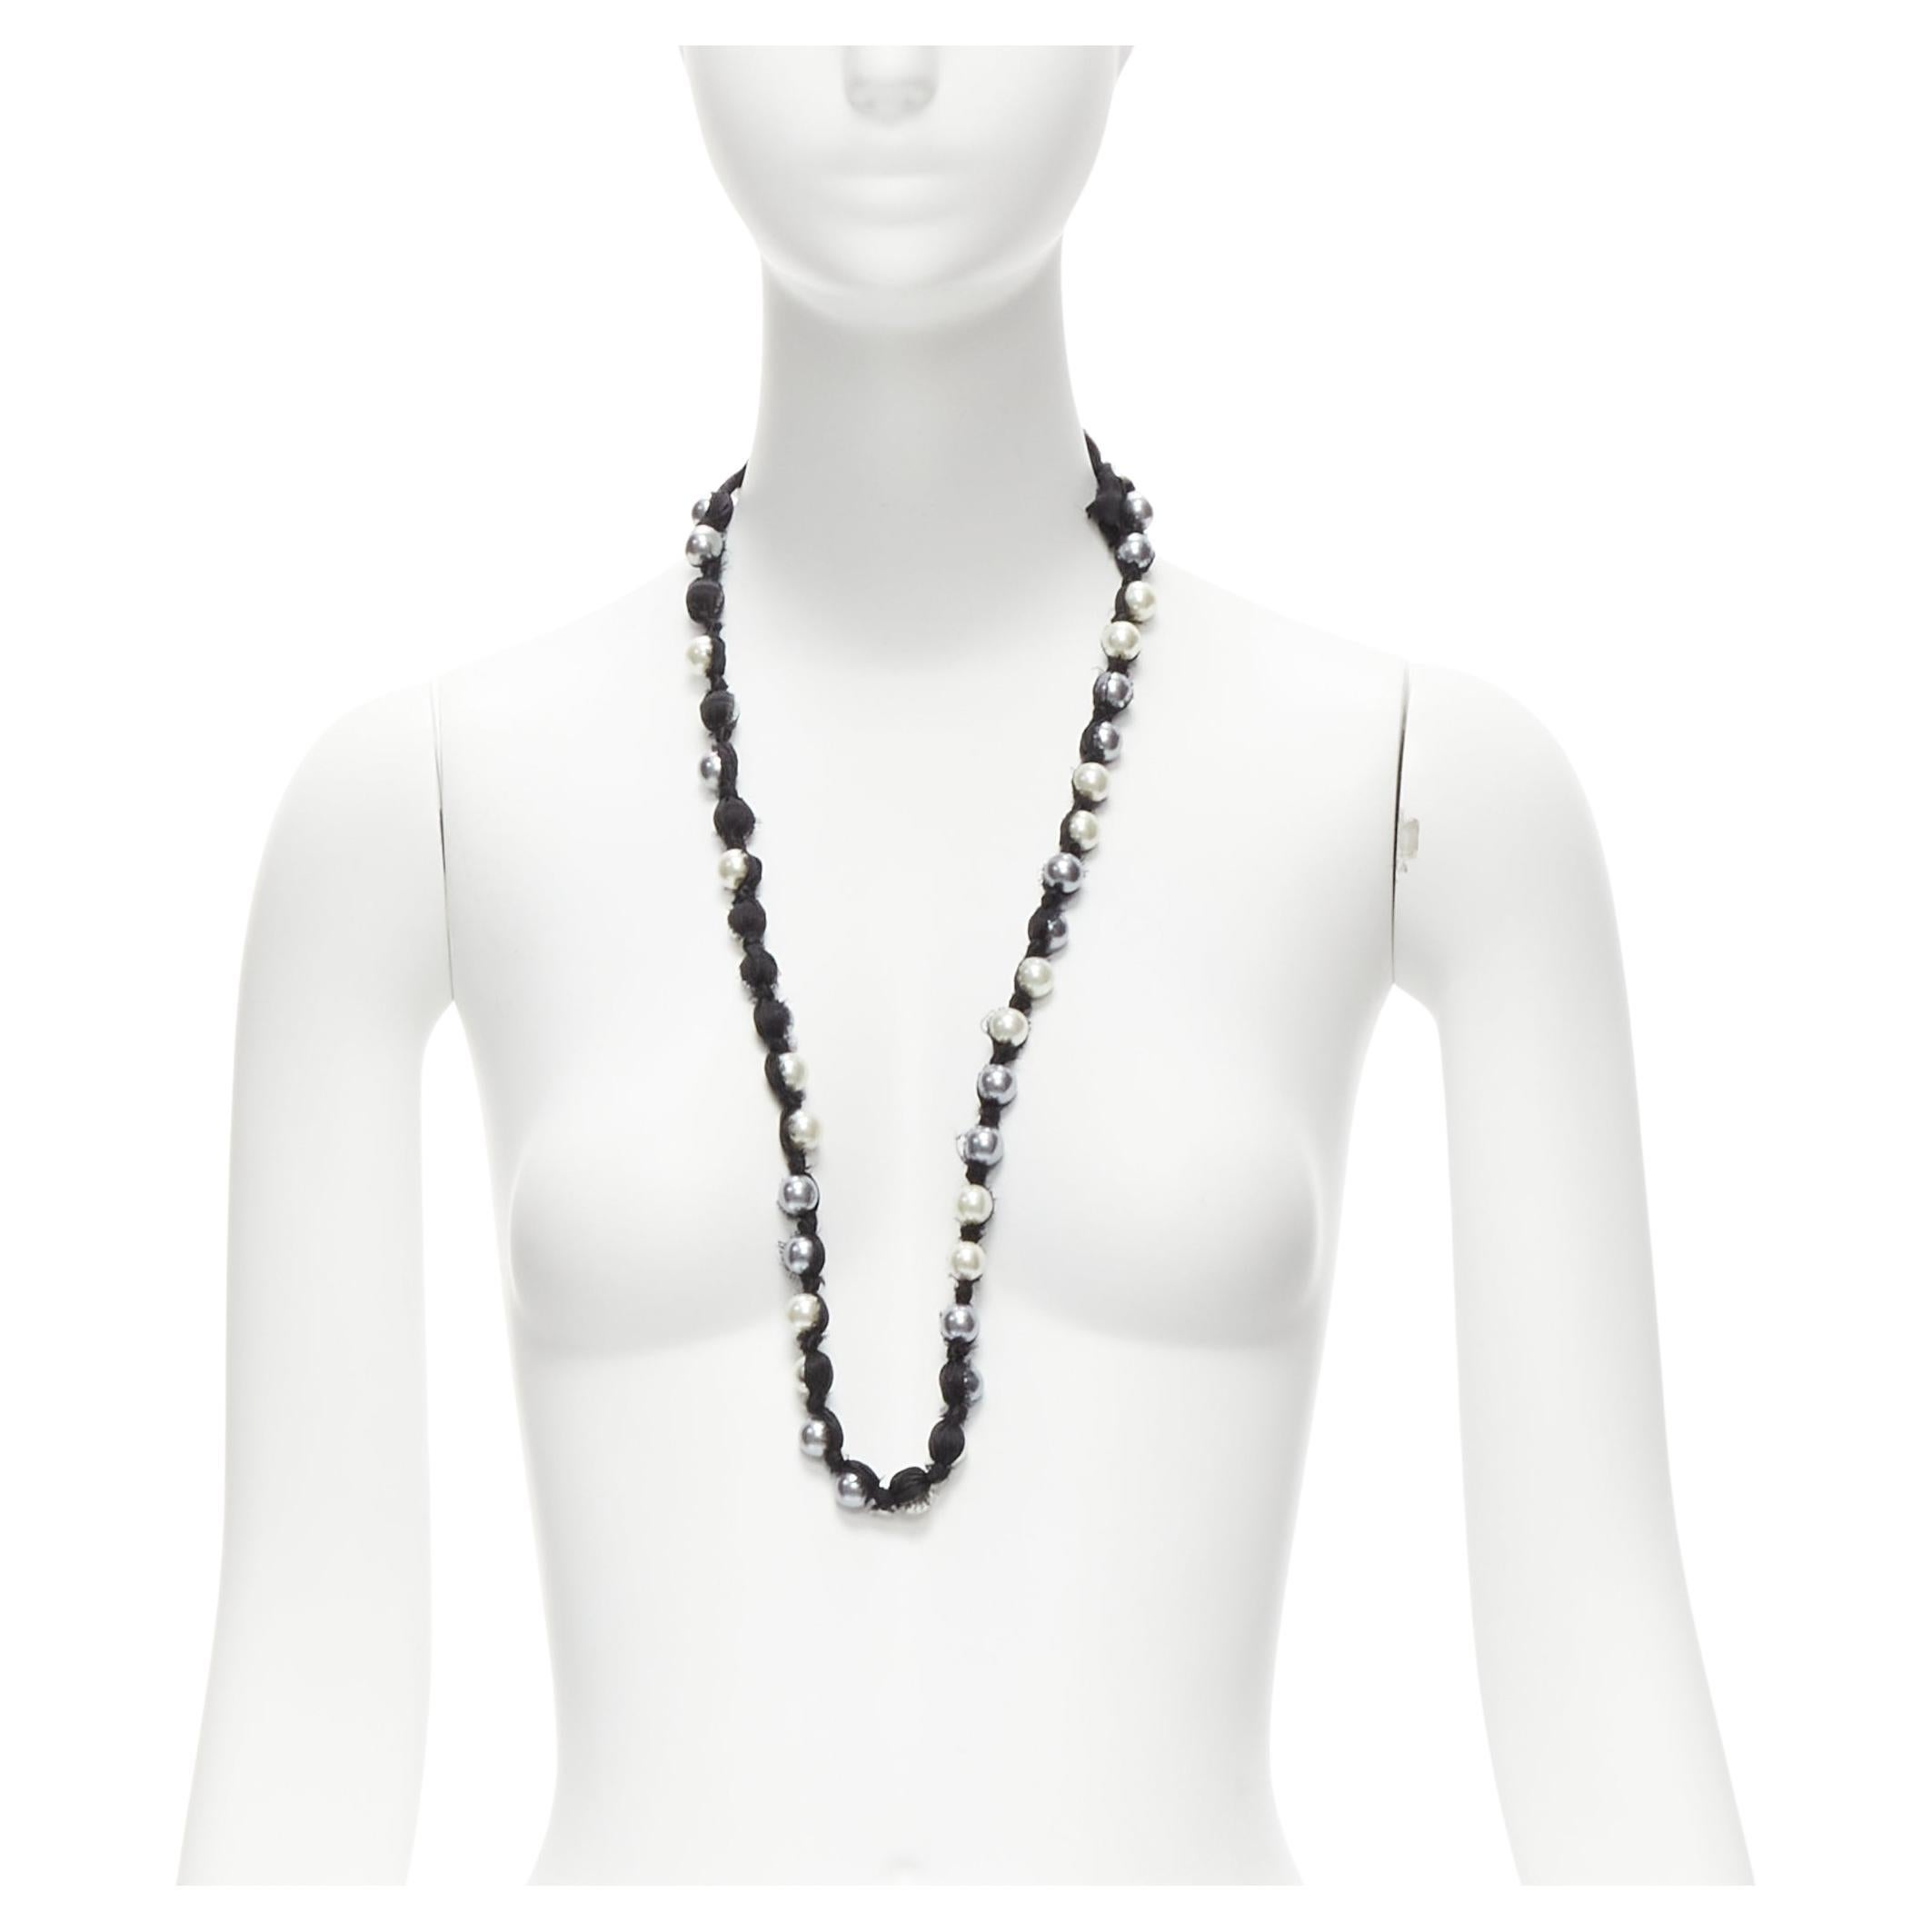 LANVIN ALBER ELBAZ, long collier enveloppé de rubans de soie de perles noires, anthracite crème et noire en vente